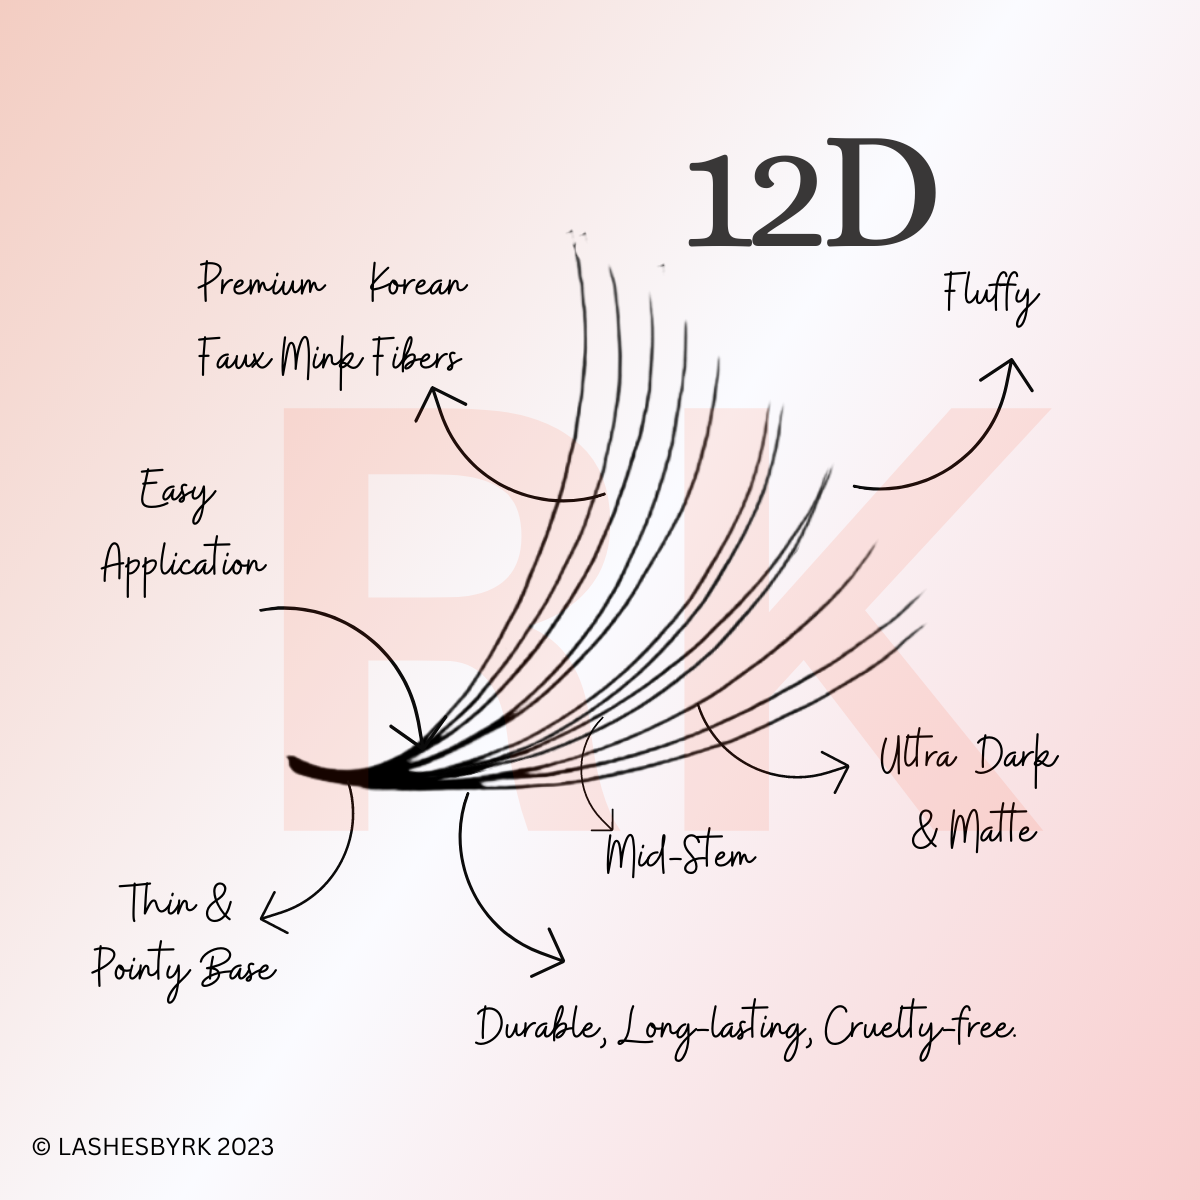 10D-14D | Speedy/Rapid Promade Single Size